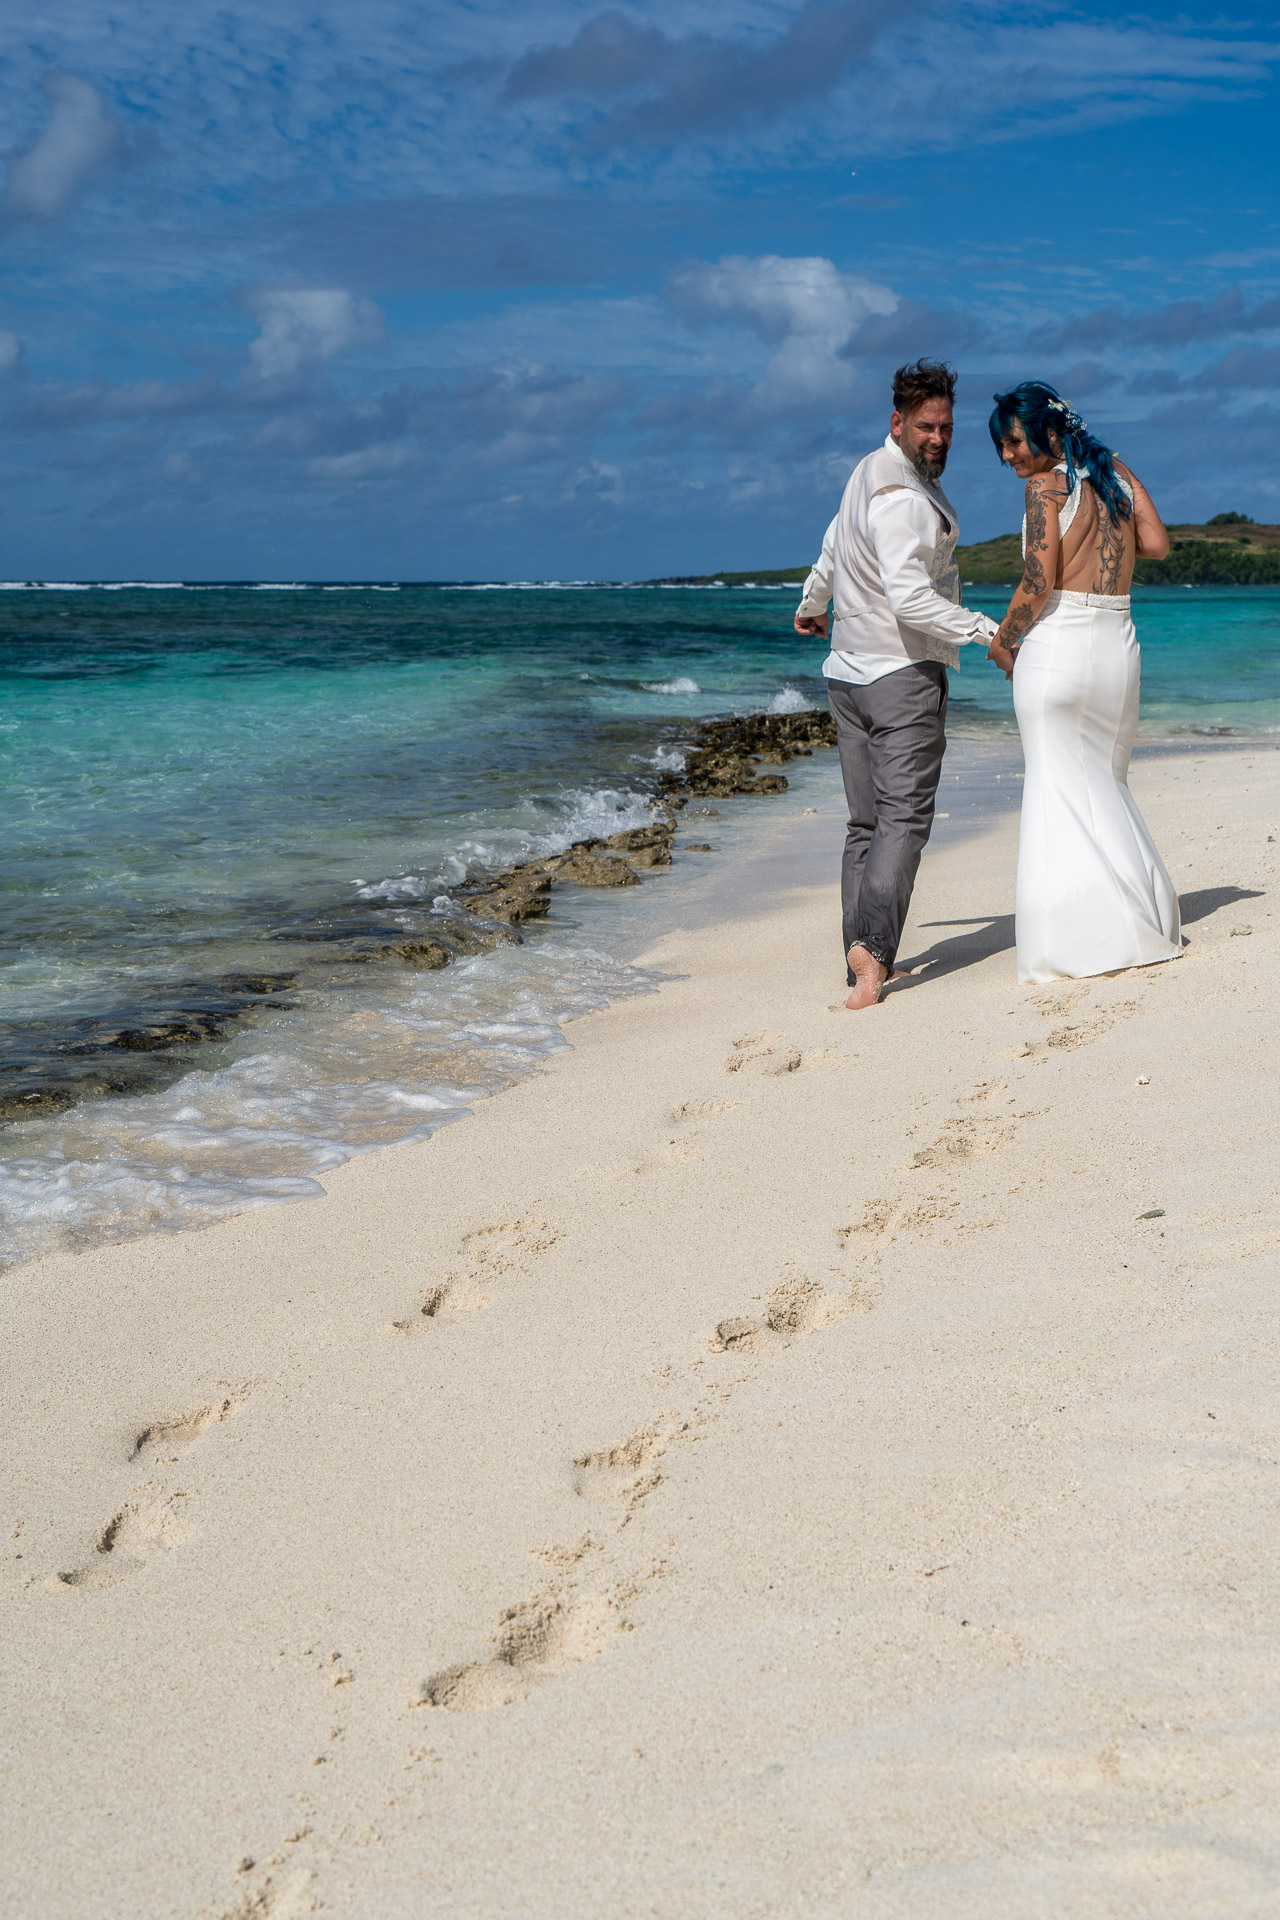 Dreamcatcher, Heiraten auf Mauritius